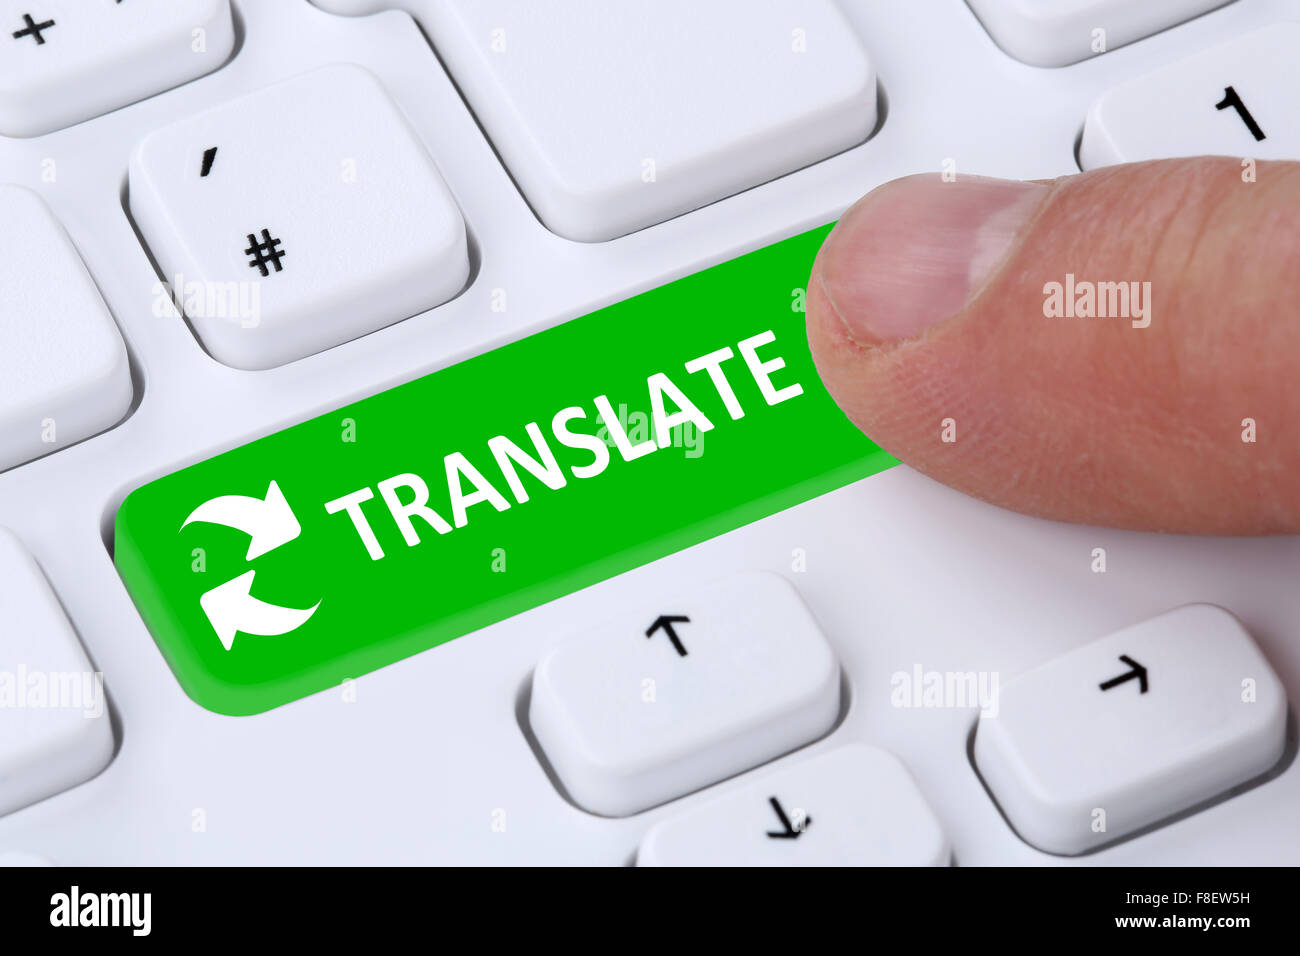 Translate traduction traducteur de langue étrangère l'apprentissage sur internet Banque D'Images